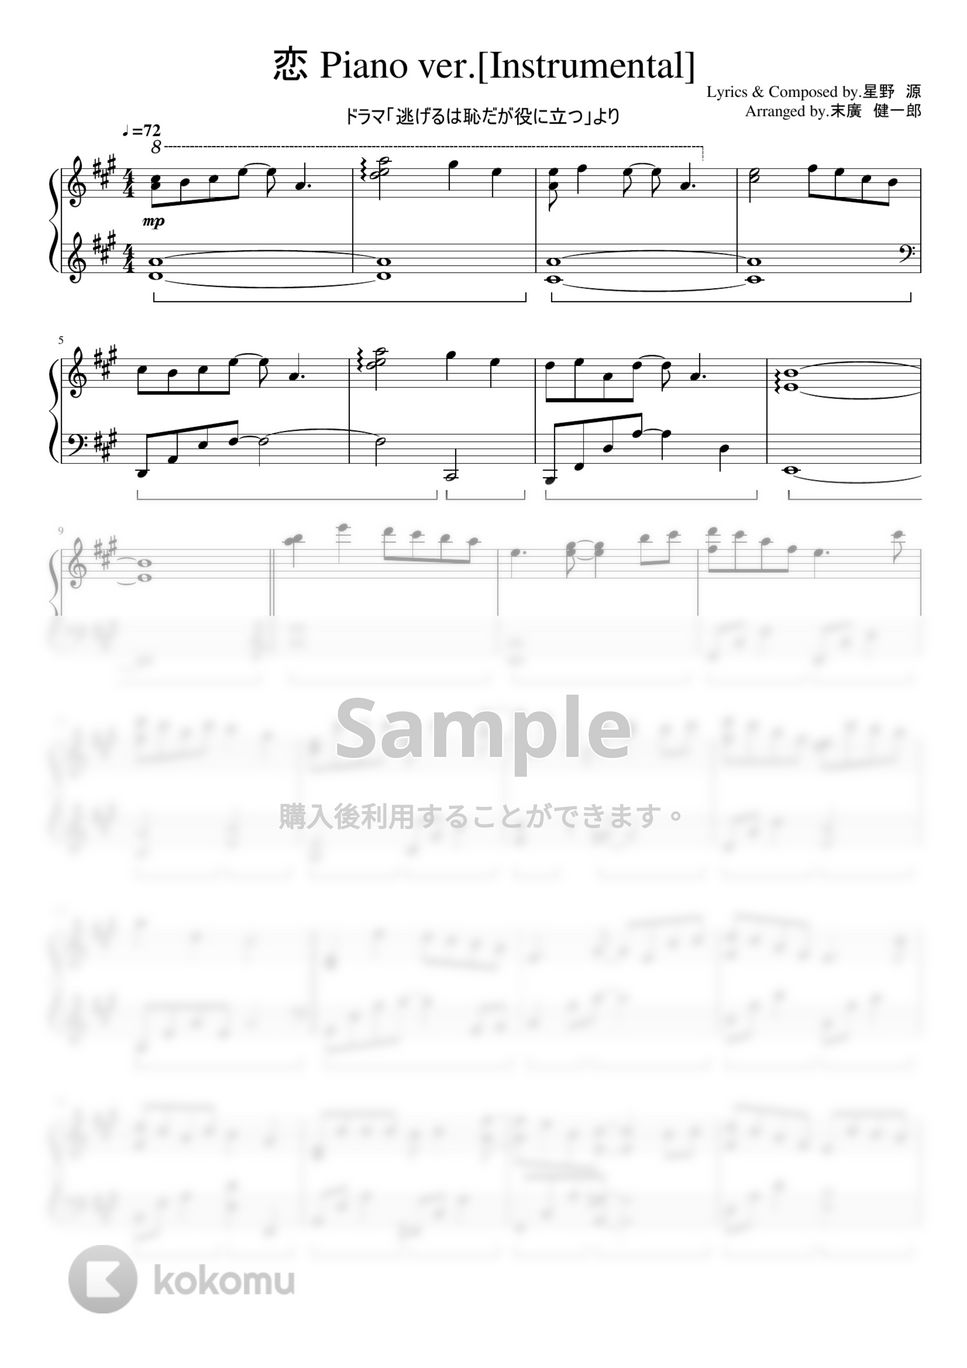 ドラマ「逃げるは恥だが役に立つ」 - 恋 Piano ver.[Instrumental] by ちゃんRINA。